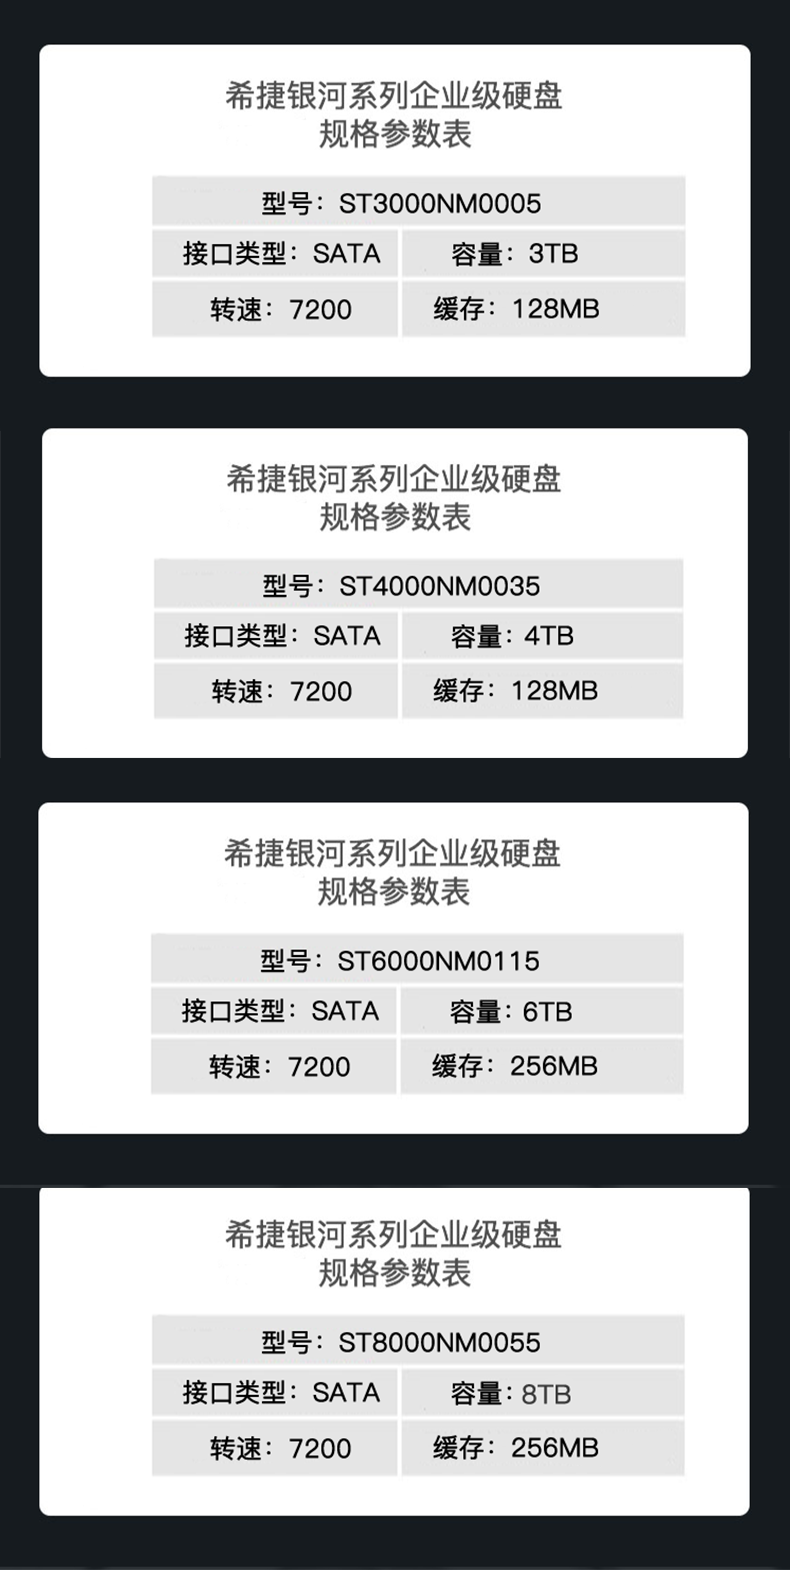 希捷 3TB 128MB 7200RPM 企业级硬盘 SATA接口 希捷银河Exos 7E8系列(Seagate ST3000NM0005)